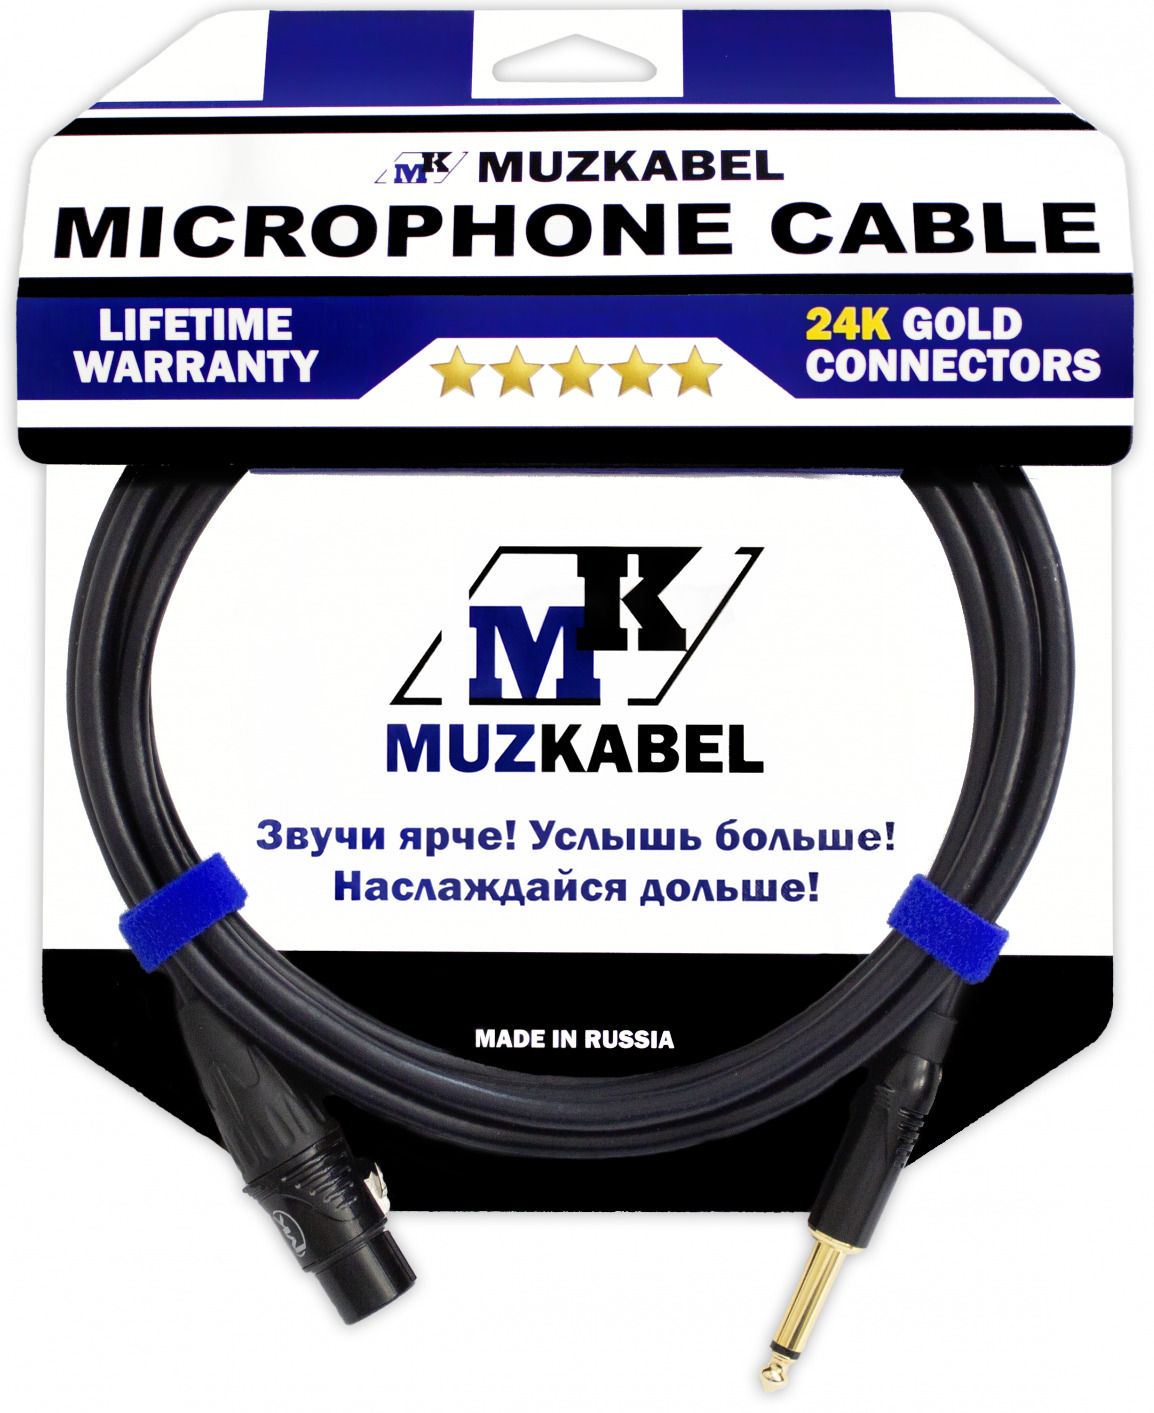 Микрофонный кабель MUZKABEL GXXMK3 - 1 метр, XLR (МАМА) - JACK